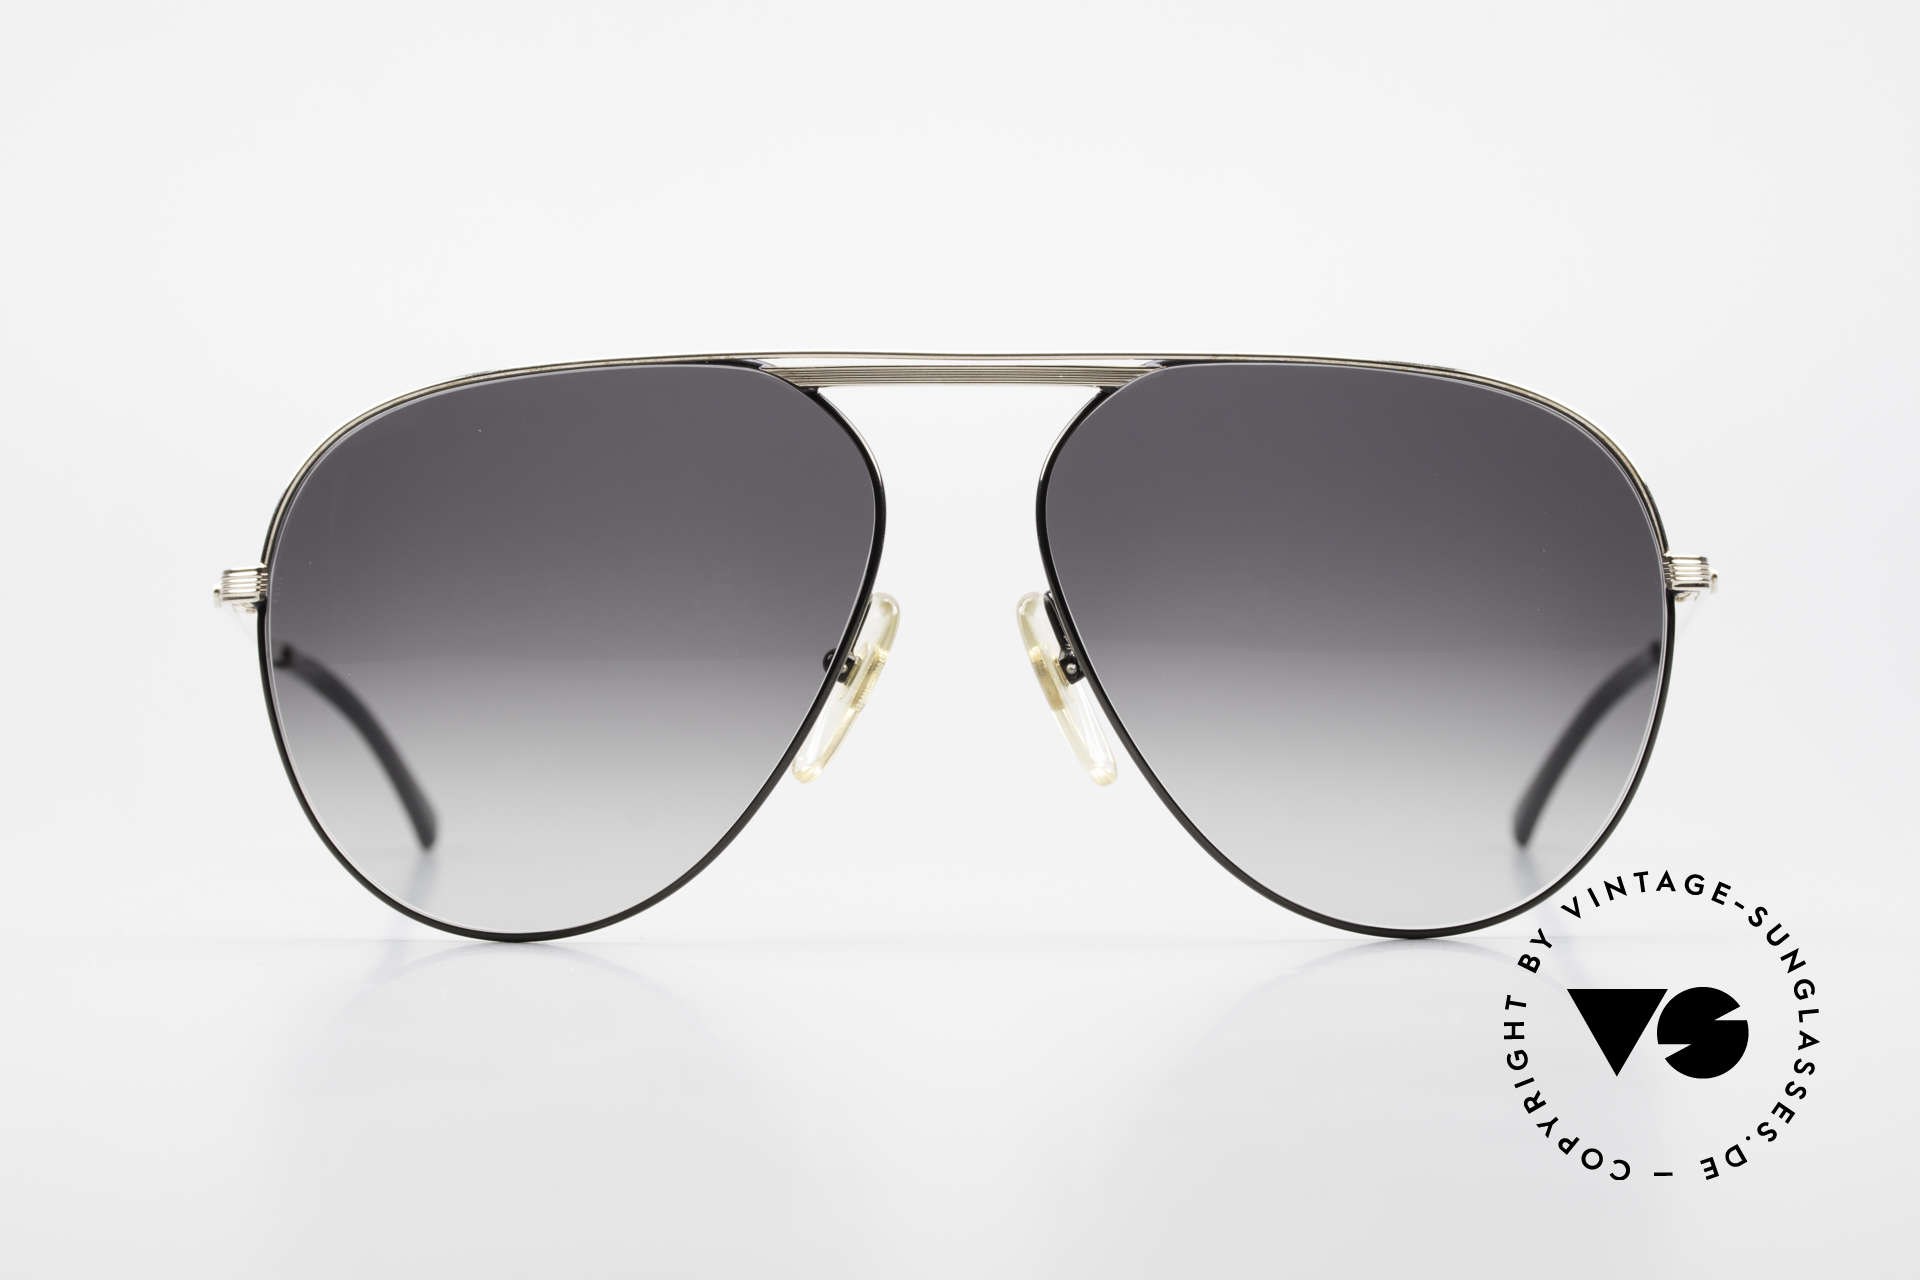 Christian Dior 2536 XXL 80er Vintage Sonnenbrille, Top-Qualität (Mittelteil & Bügel sind vergoldet), Passend für Herren